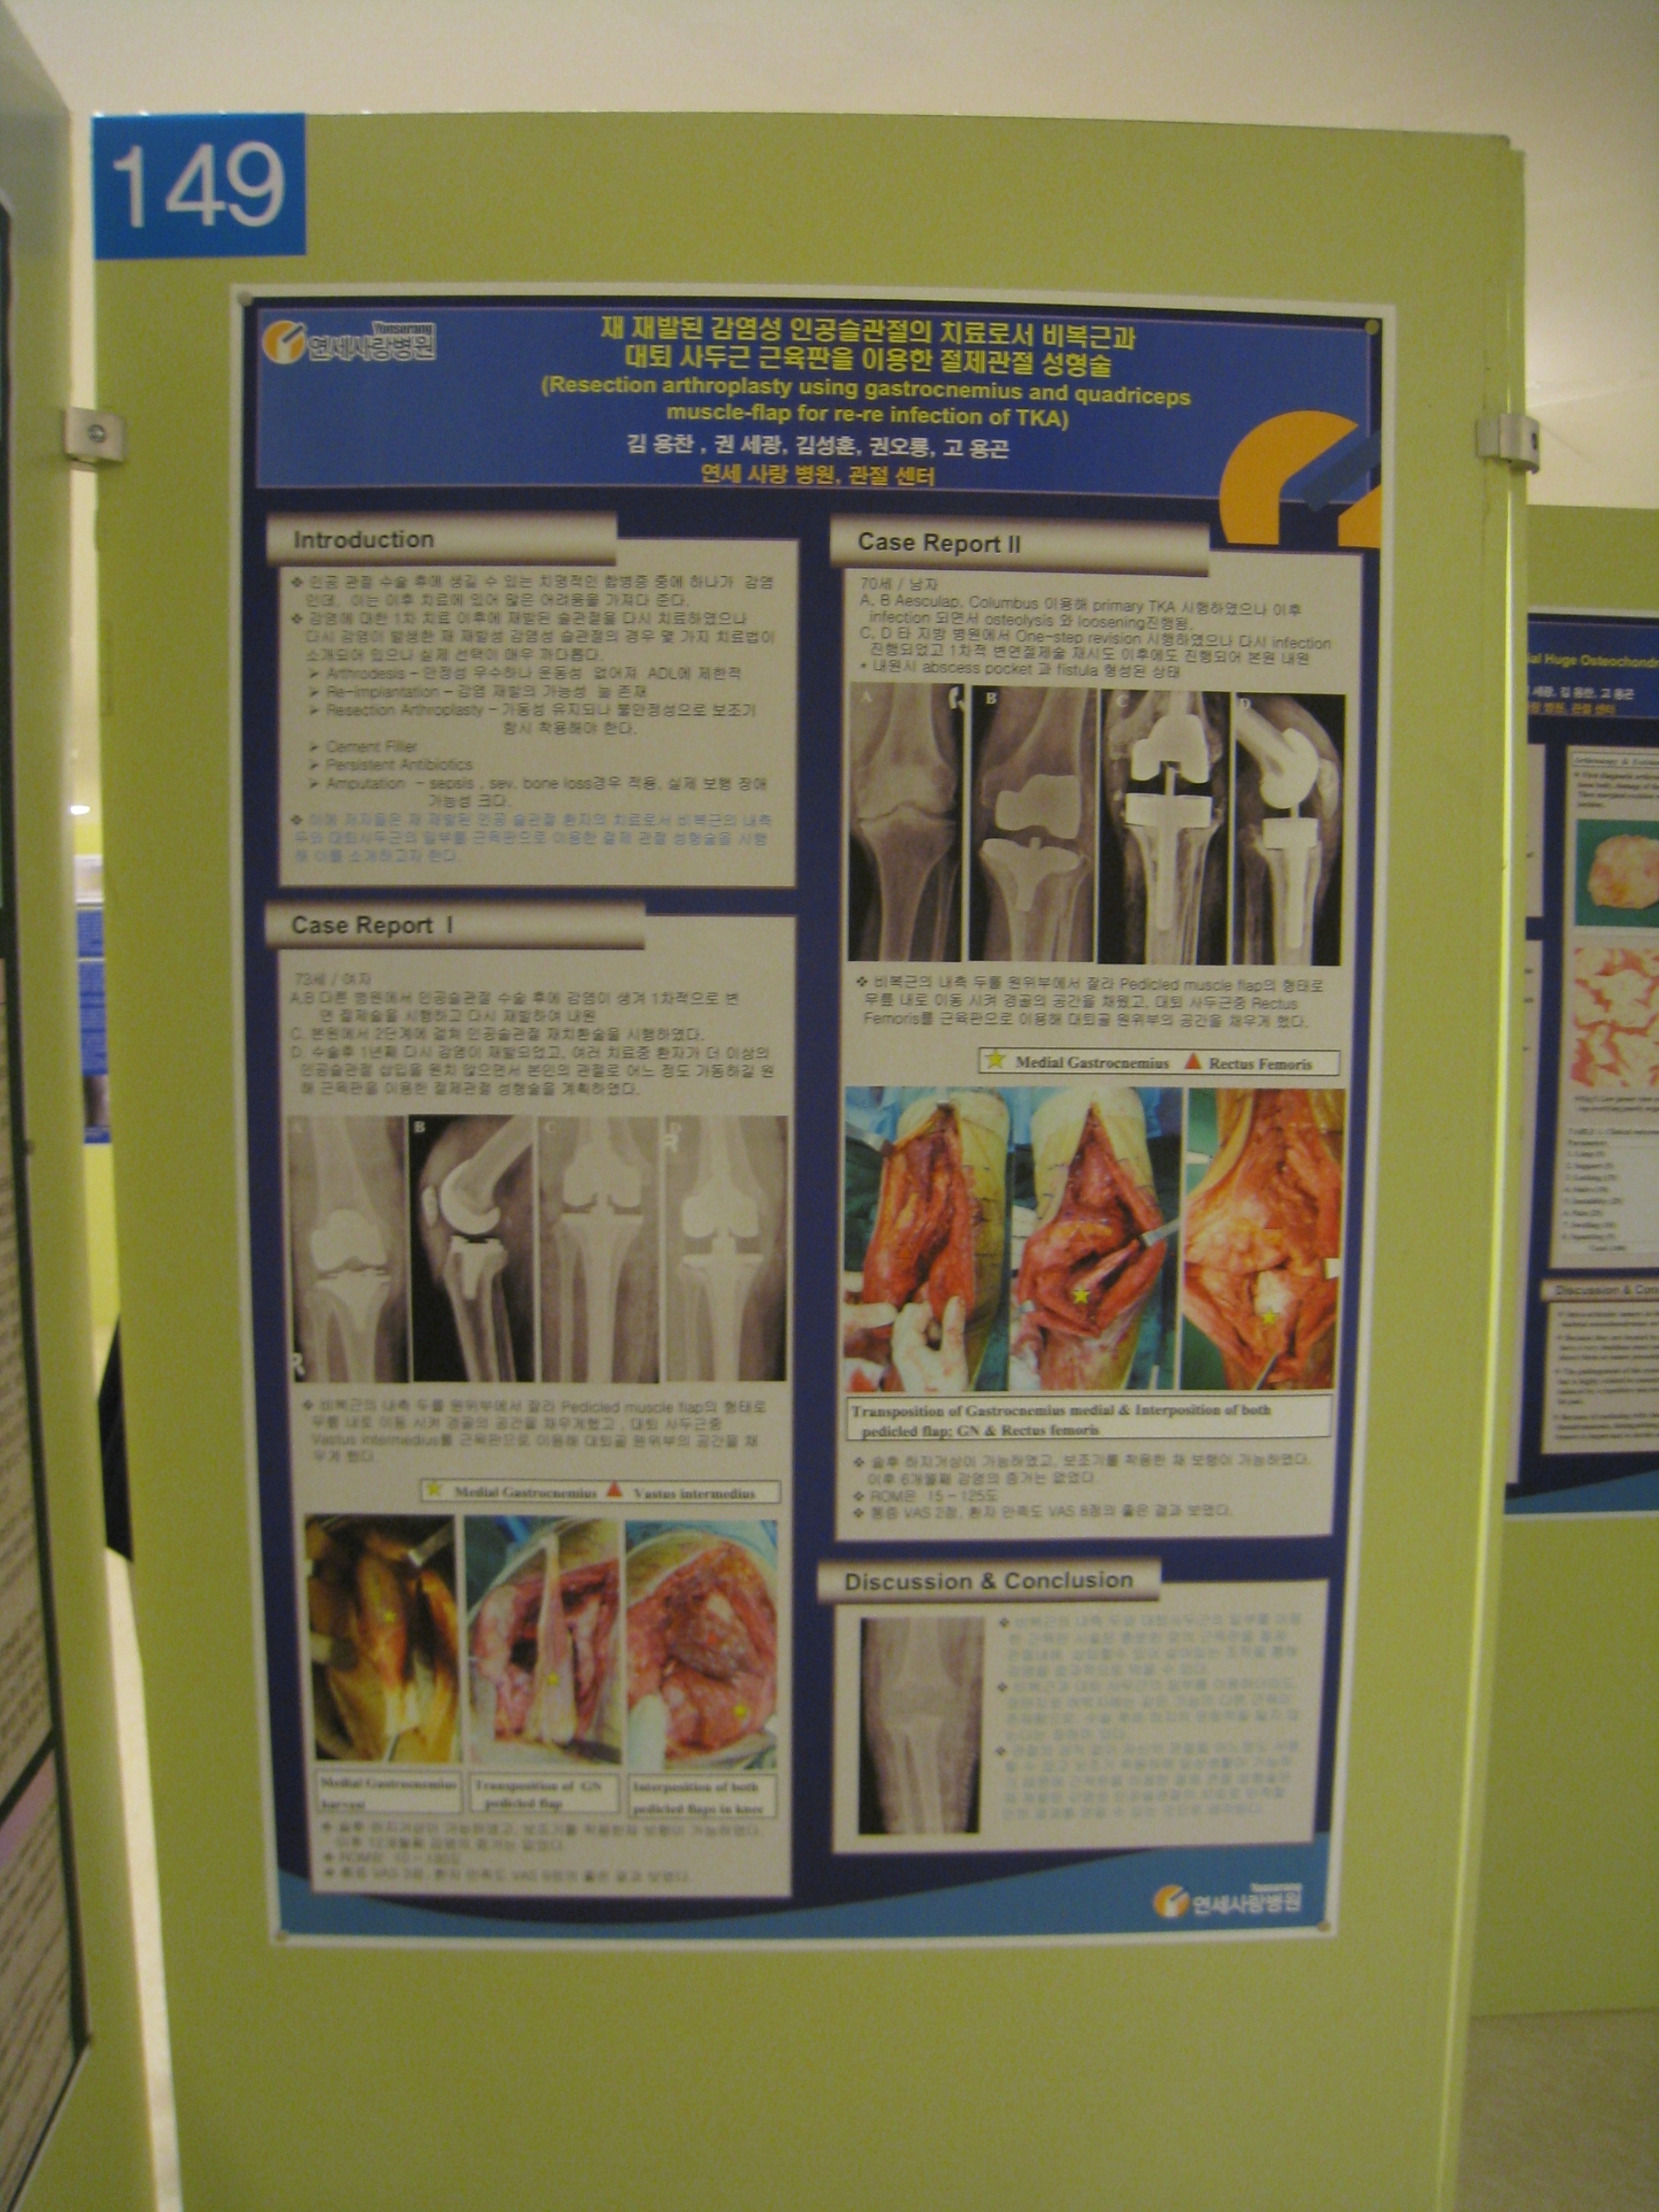 [2009 대한정형외과 학회 포스터] 재발된 감염성 인공슬관절의 치료로서 비복근과 대퇴 사두근 근육판을 이용한 절제 관절 성형술 게시글의 1번째 첨부파일입니다.